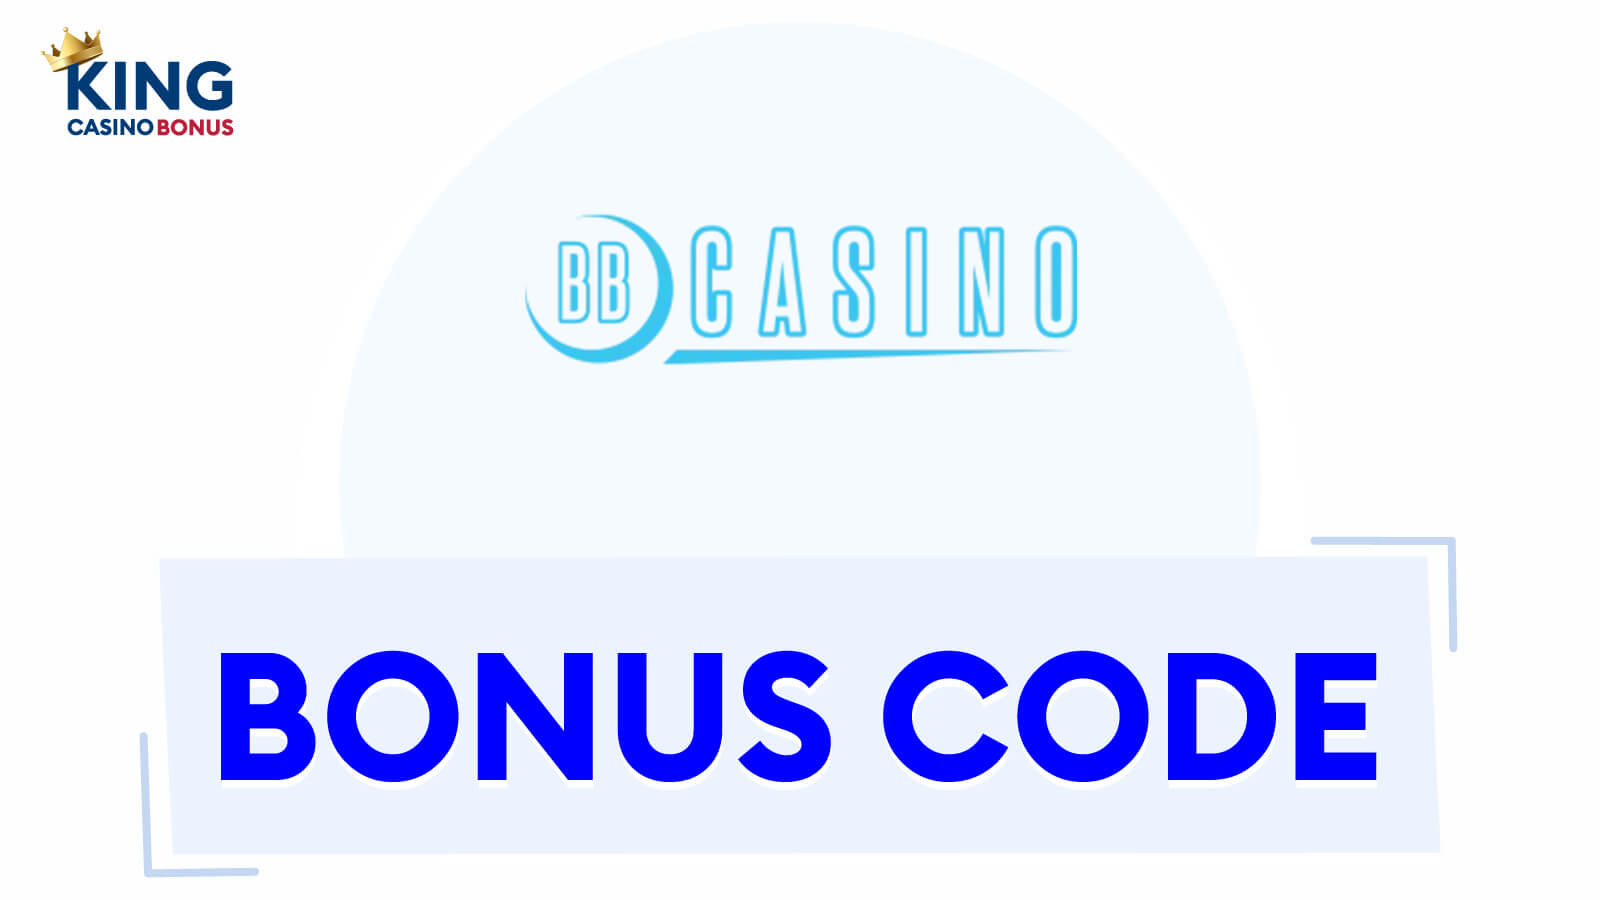 BBCasino Bonus Codes